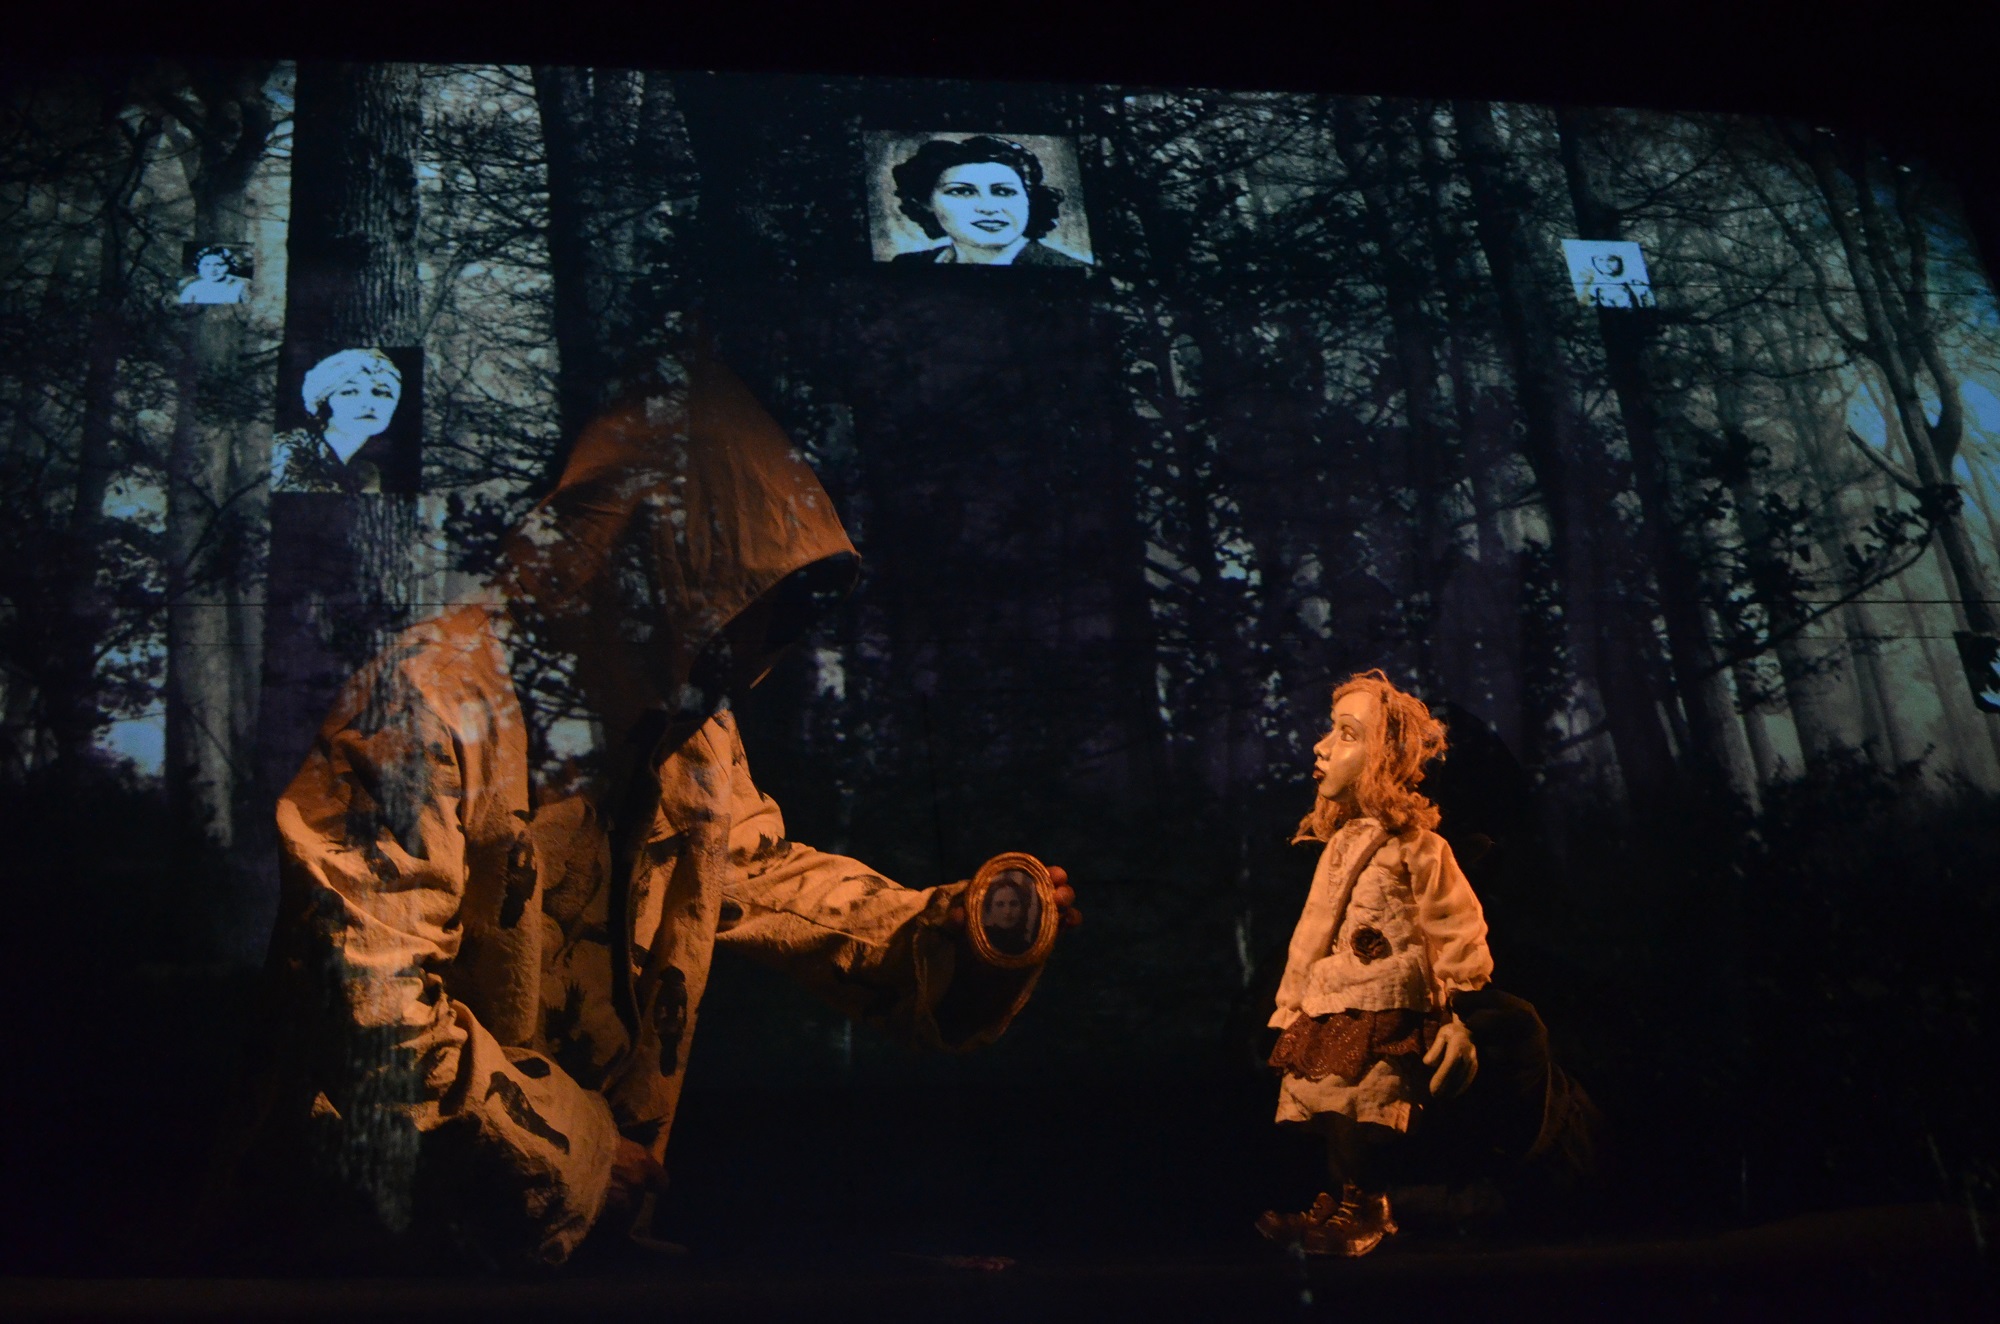 Πειραματική Σκηνή Καλαμάτας: Νέα παράσταση "ΡΕΜΠΕΤΙΚΟ" ζωντανεύει με μαγικό τρόπο την ιστορία της Ρεμπέτικης μουσικής 8